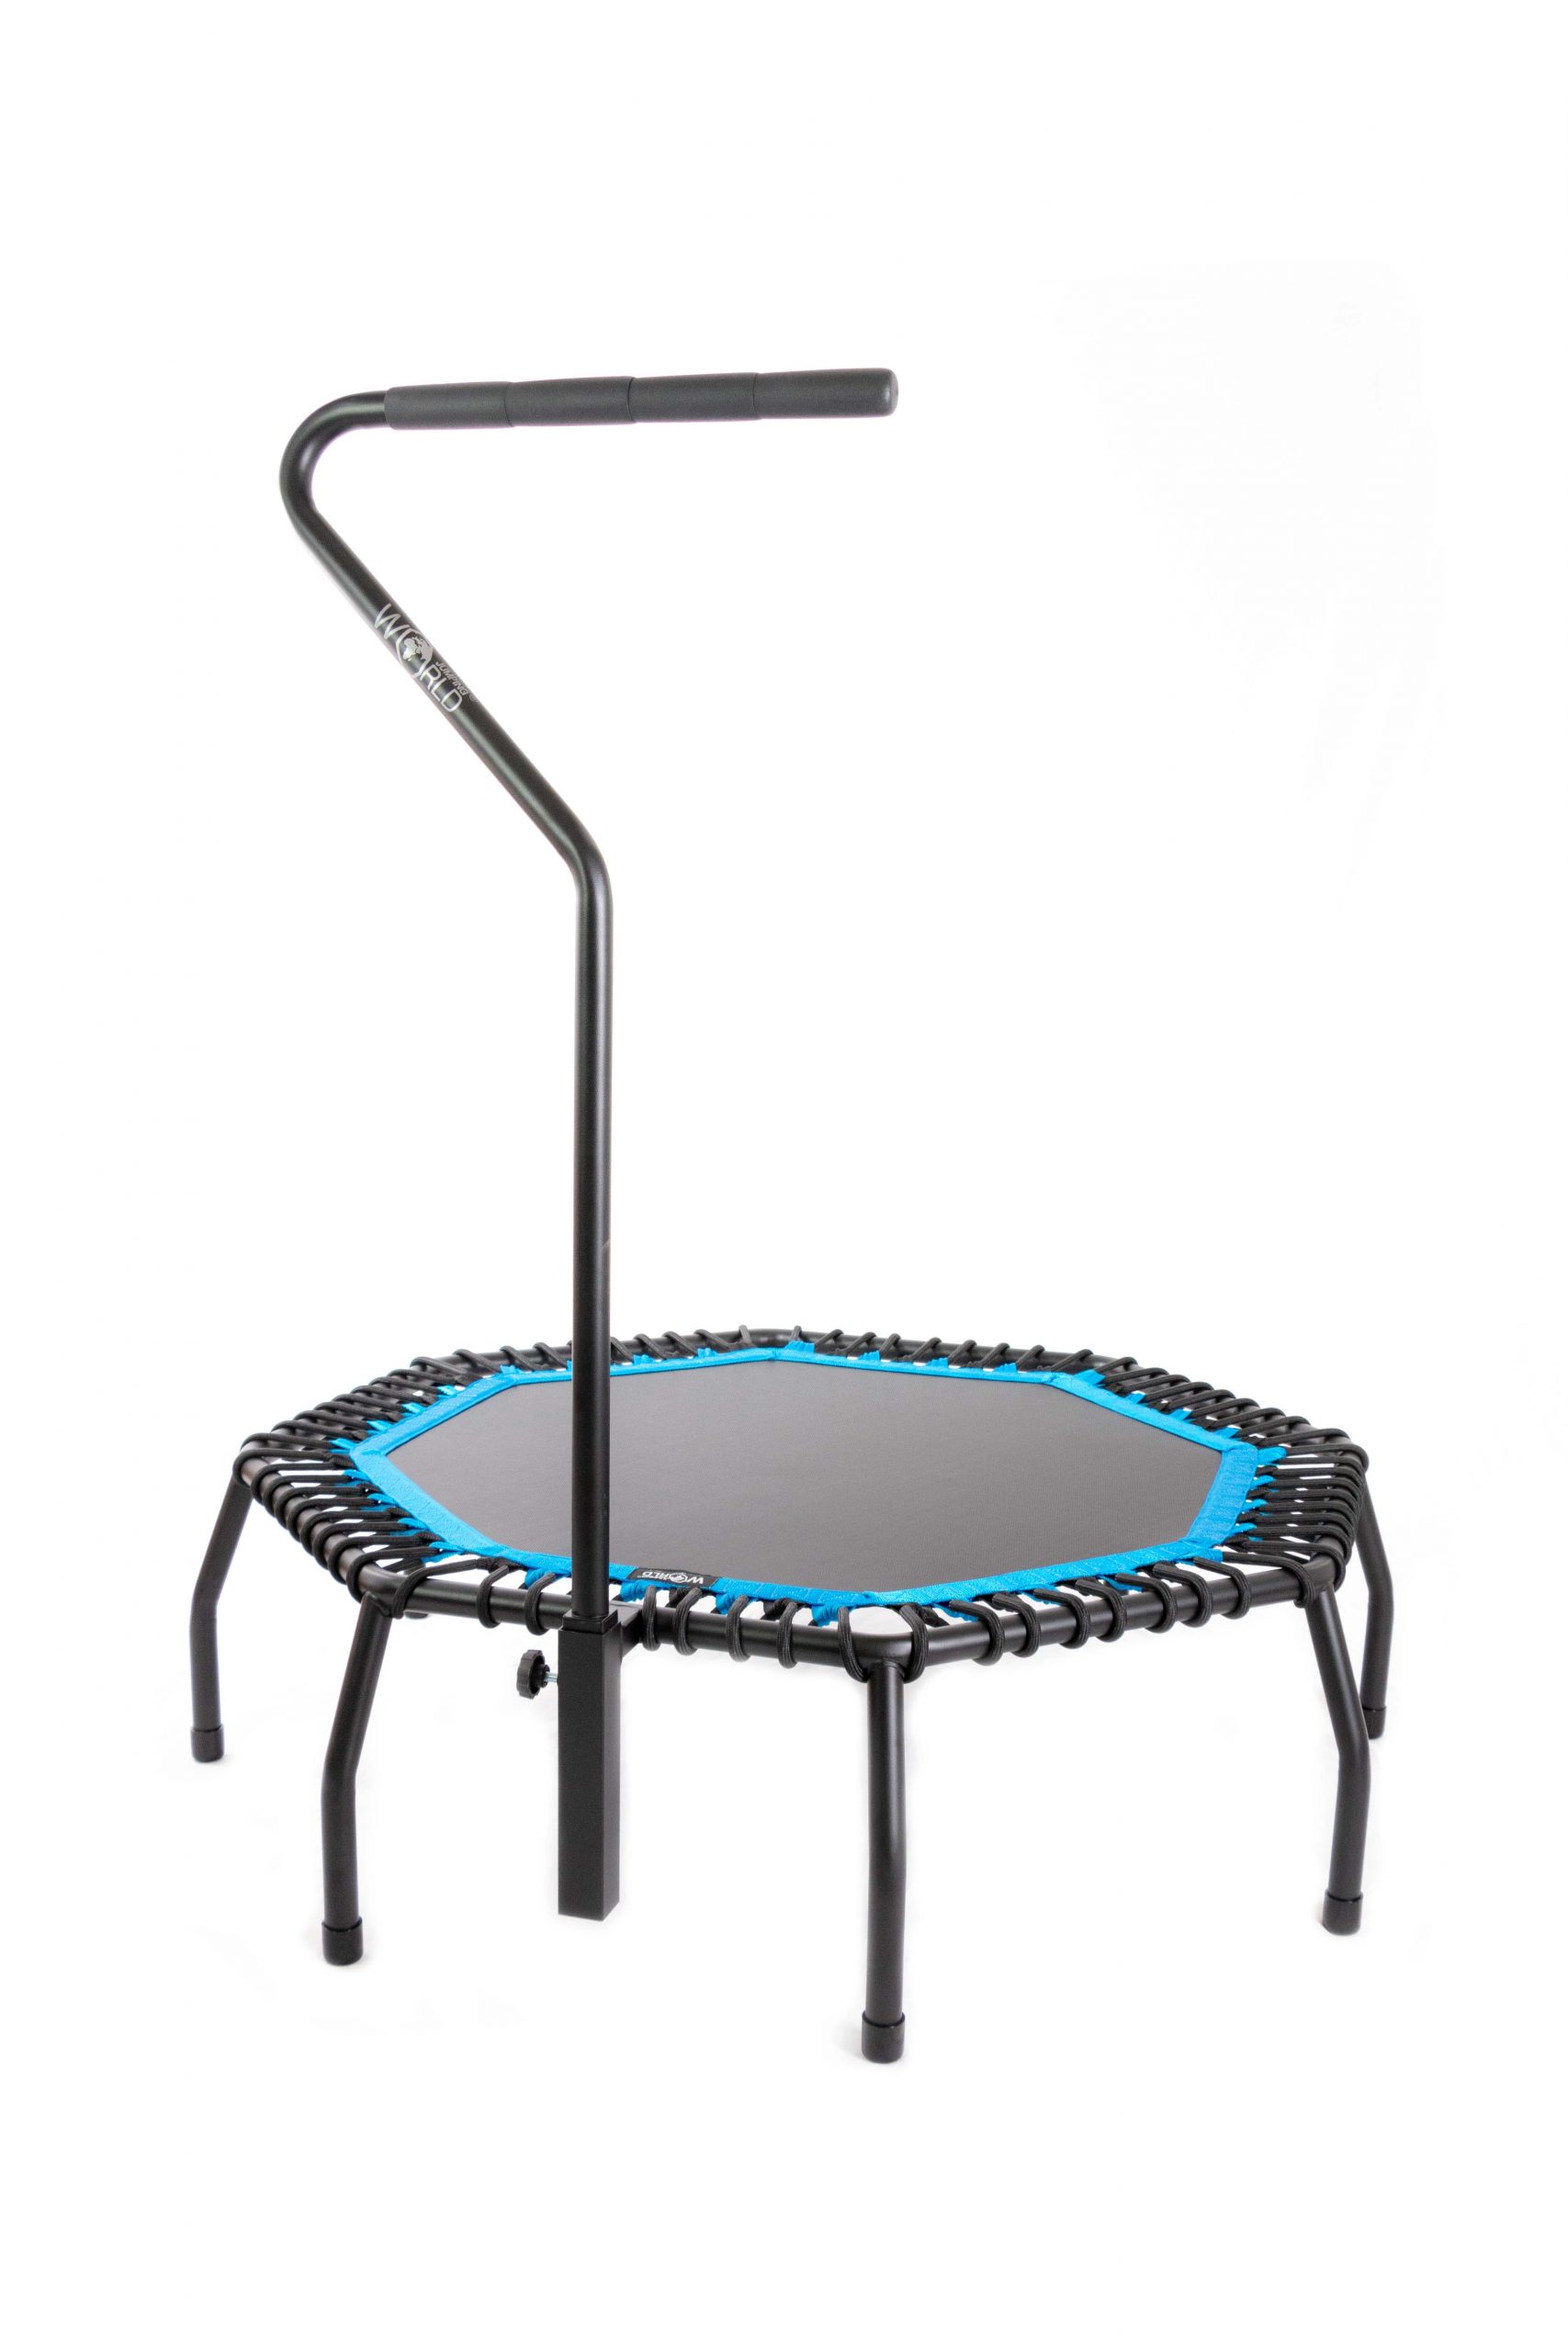 lekken Luiheid Boom SPIDER Studio Standard trampoline - Blue - World Jumping